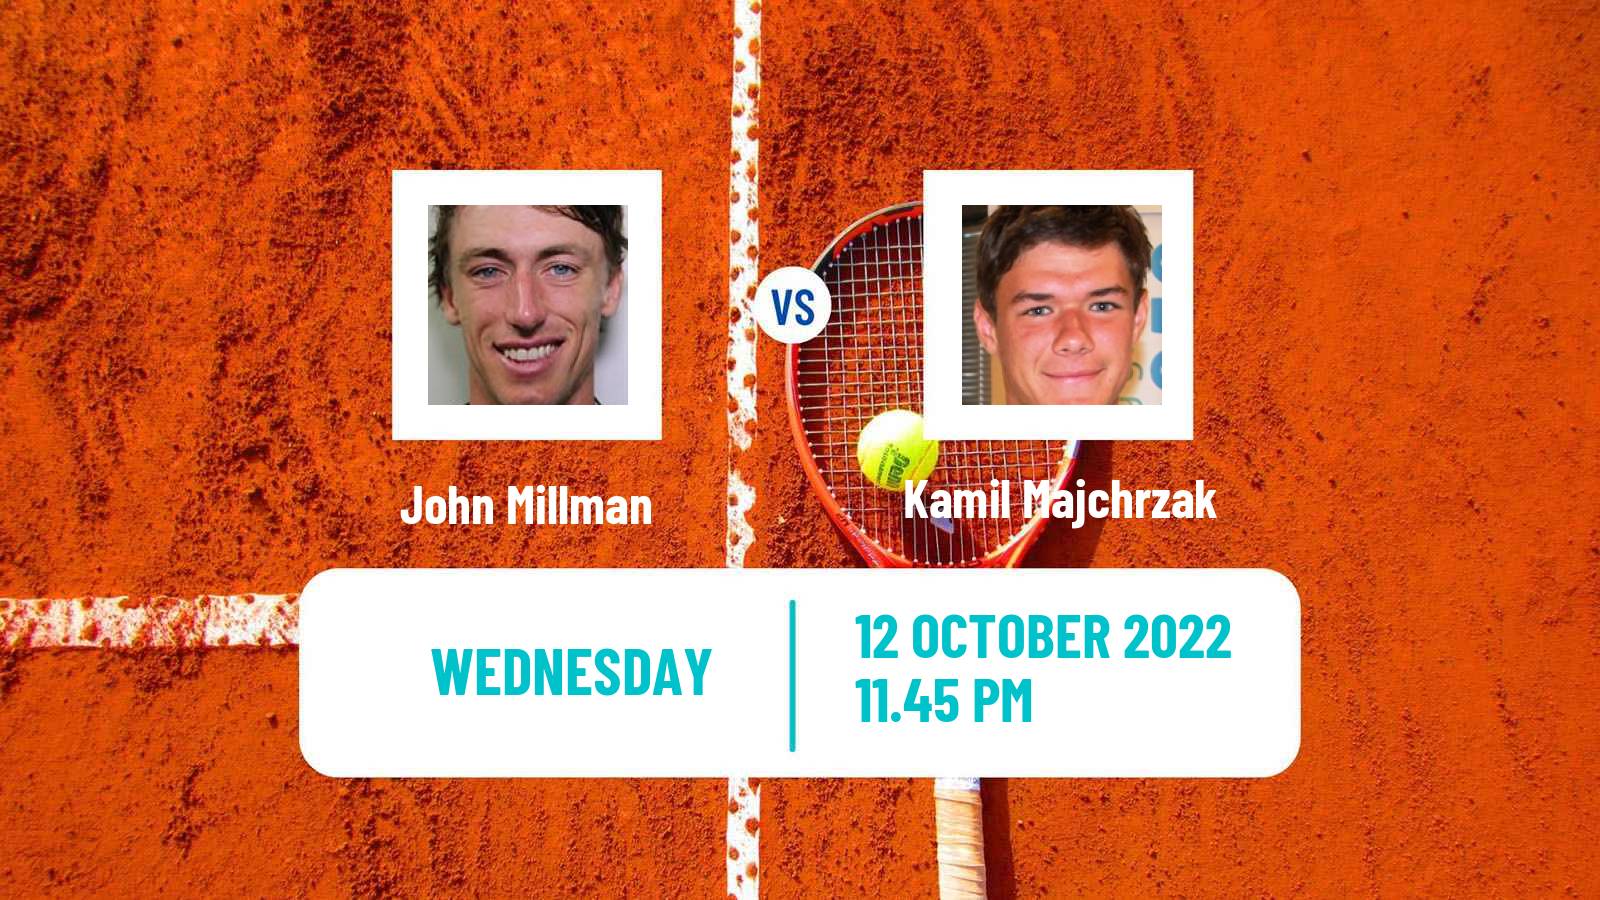 Tennis ATP Challenger John Millman - Kamil Majchrzak